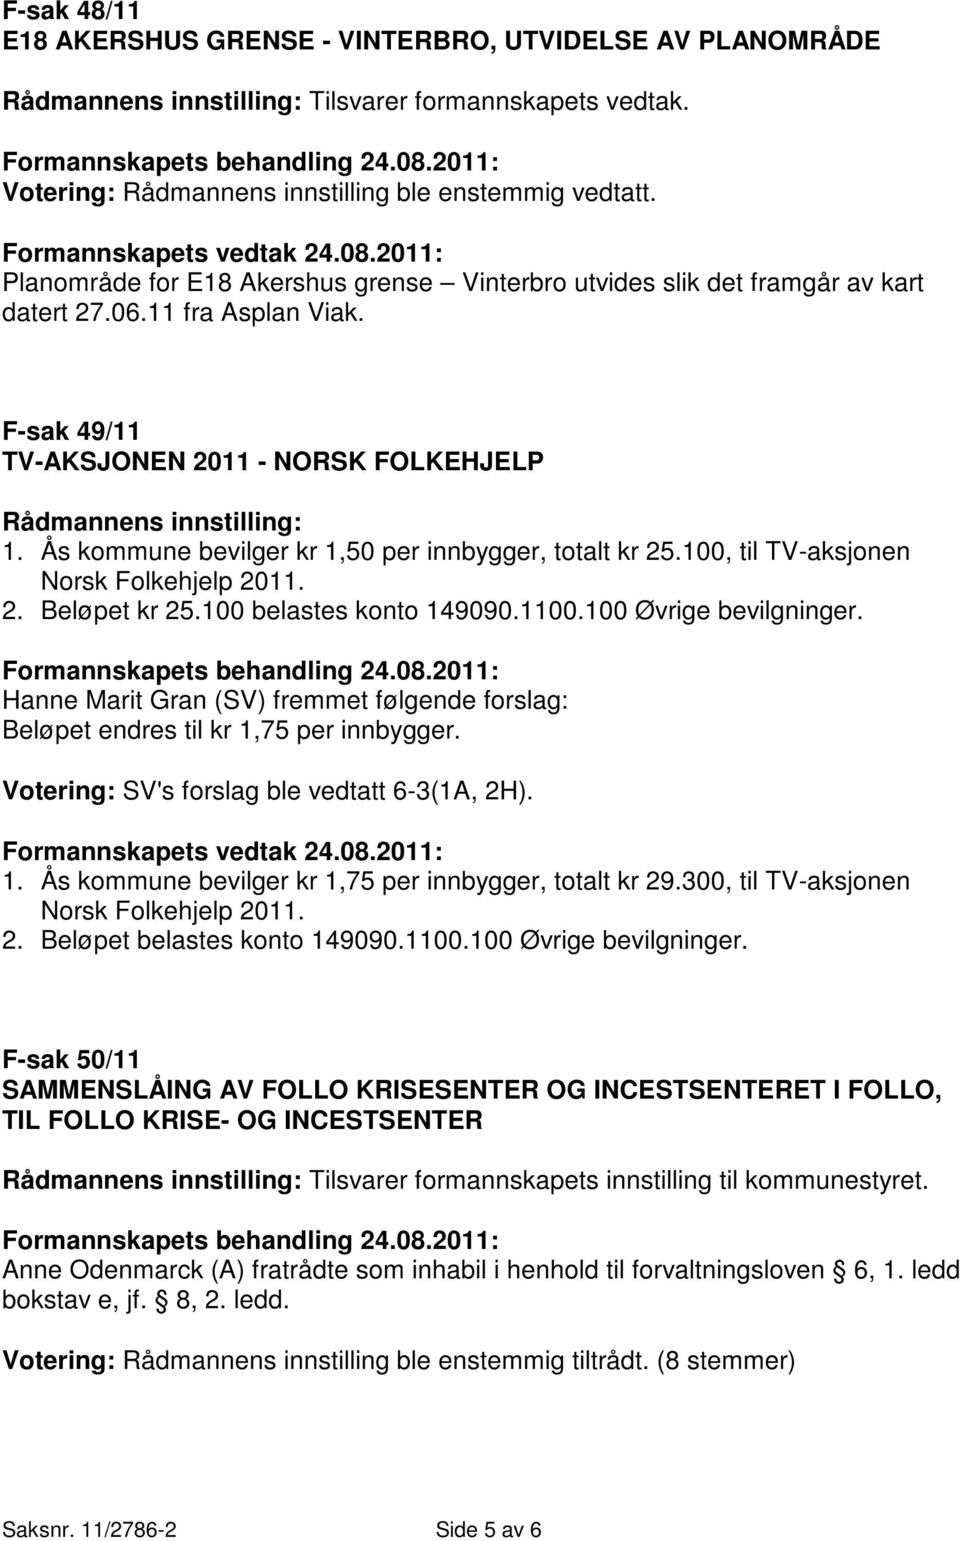 11 fra Asplan Viak. F-sak 49/11 TV-AKSJONEN 2011 - NORSK FOLKEHJELP Rådmannens innstilling: 1. Ås kommune bevilger kr 1,50 per innbygger, totalt kr 25.100, til TV-aksjonen Norsk Folkehjelp 2011. 2. Beløpet kr 25.